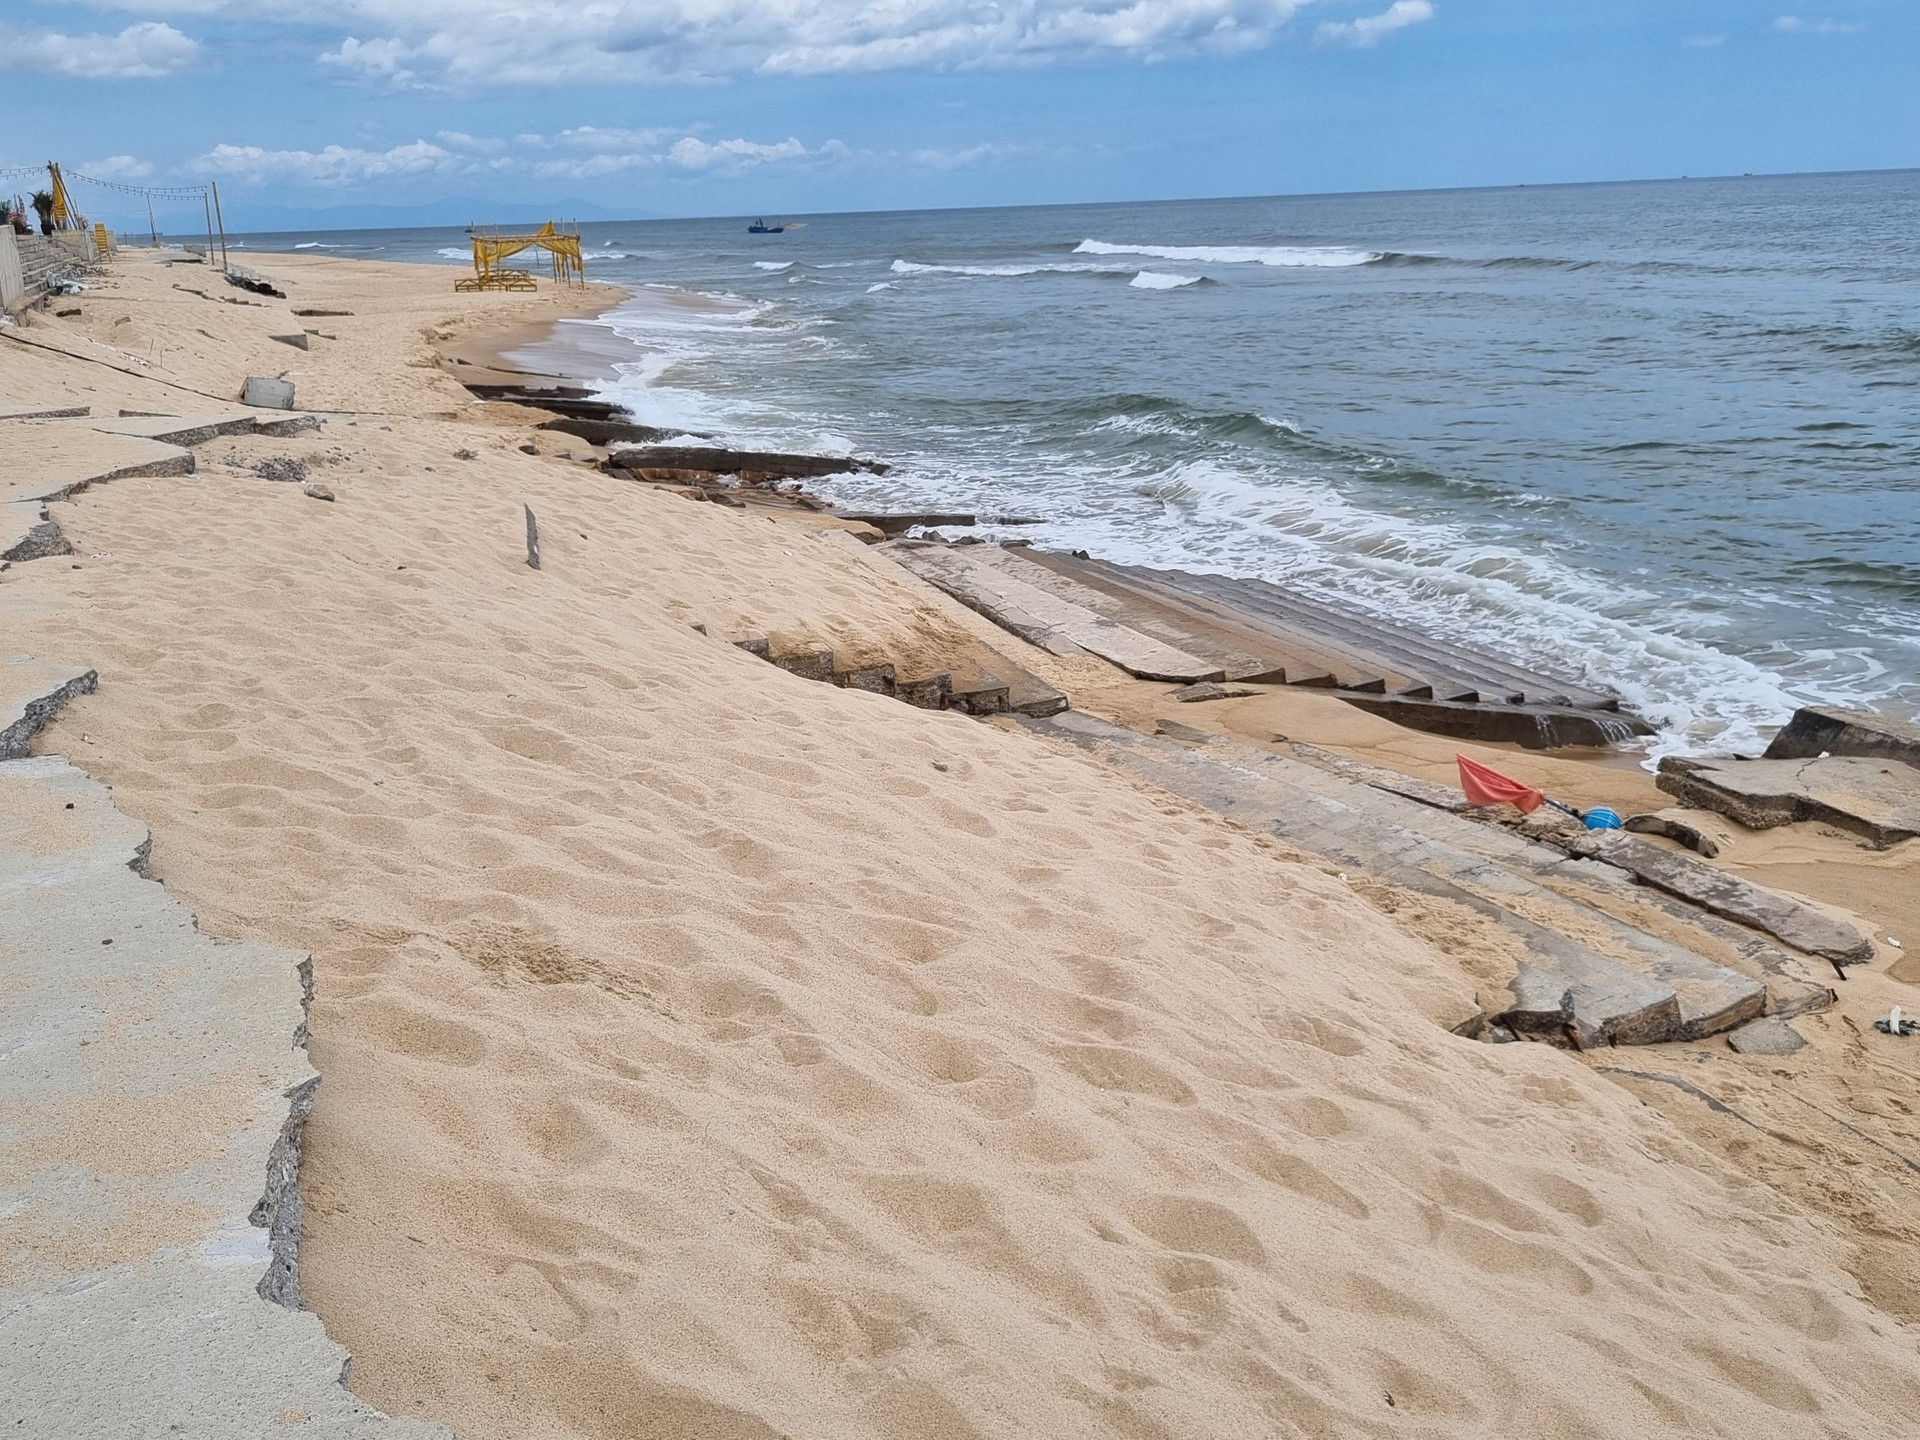 Đến tháng 10/2021, sóng biển tiếp tục làm nhiều đoạn kè mái taluy bằng tấm lát bê tông dài 800m khu vực Hải Thành - Quang Phú (TP Đồng Hới) bị hư hỏng, sập đổ với tổng chiều dài khoảng 200m.